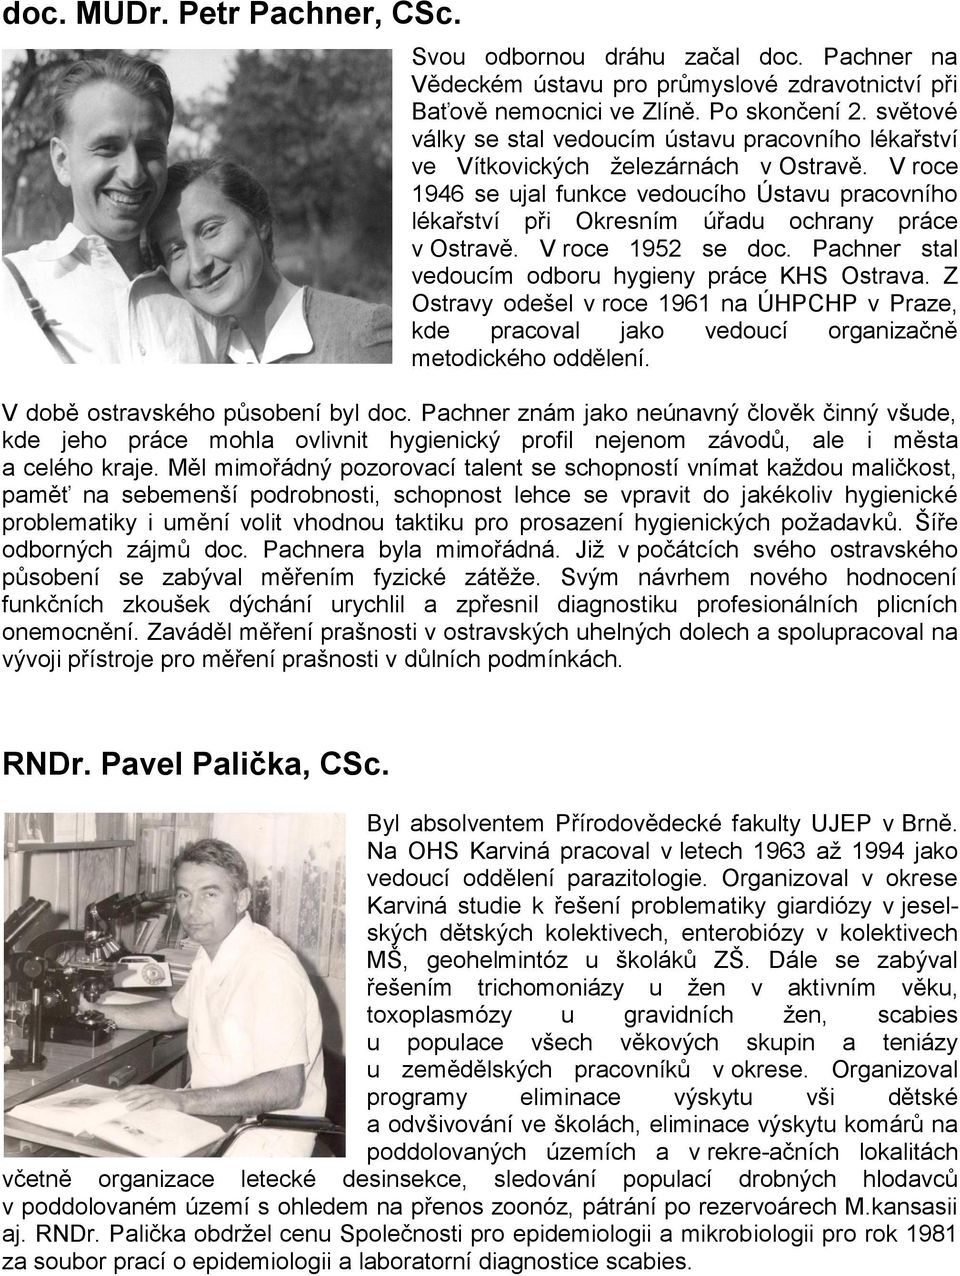 V roce 1946 se ujal funkce vedoucího Ústavu pracovního lékařství při Okresním úřadu ochrany práce v Ostravě. V roce 1952 se doc. Pachner stal vedoucím odboru hygieny práce KHS Ostrava.